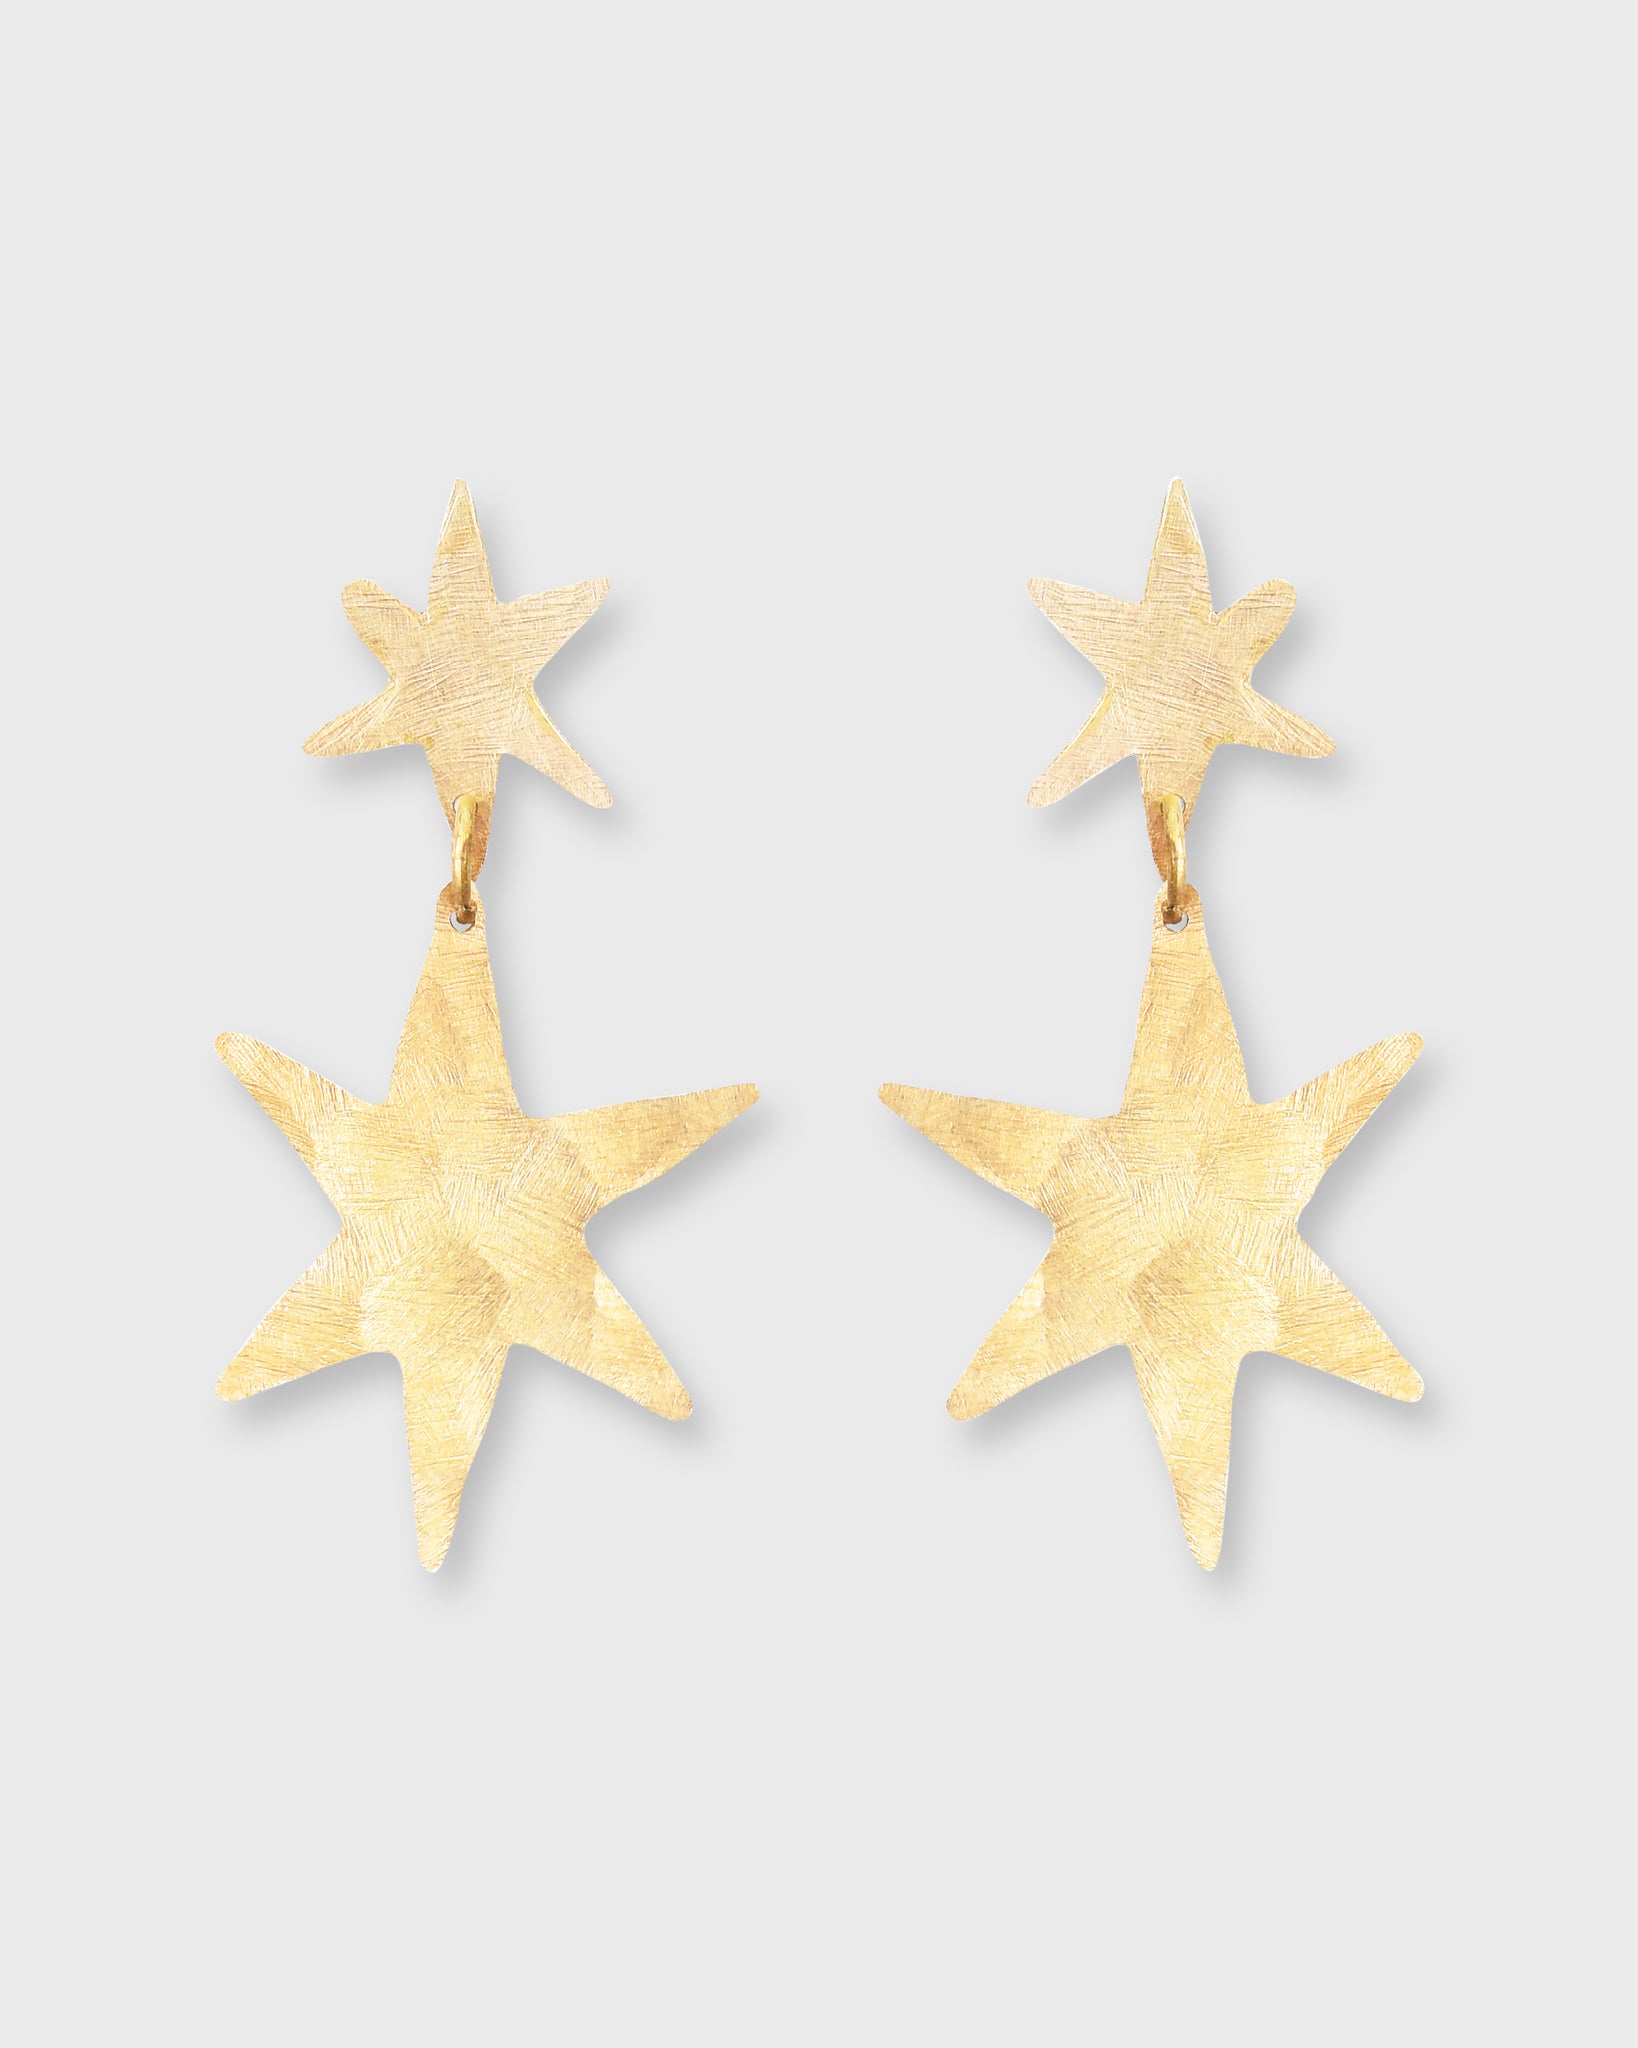 Starlet Earrings Hammered Brass